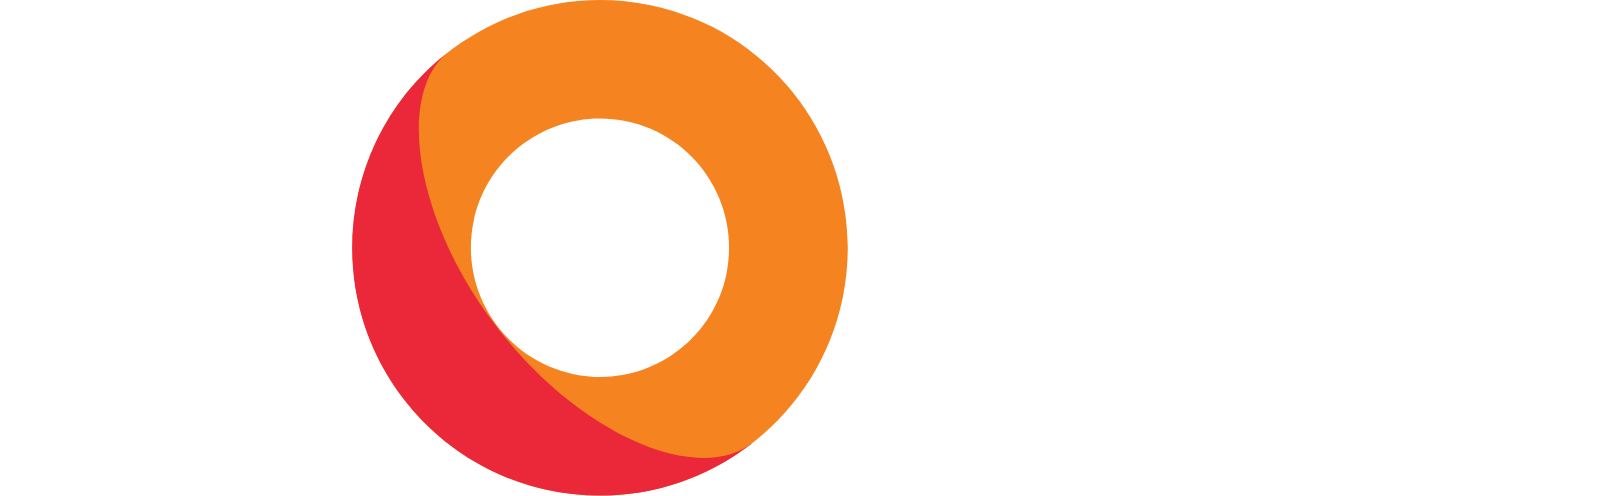 KORE Logo groß für dunkle Hintergründe (transparentes PNG)